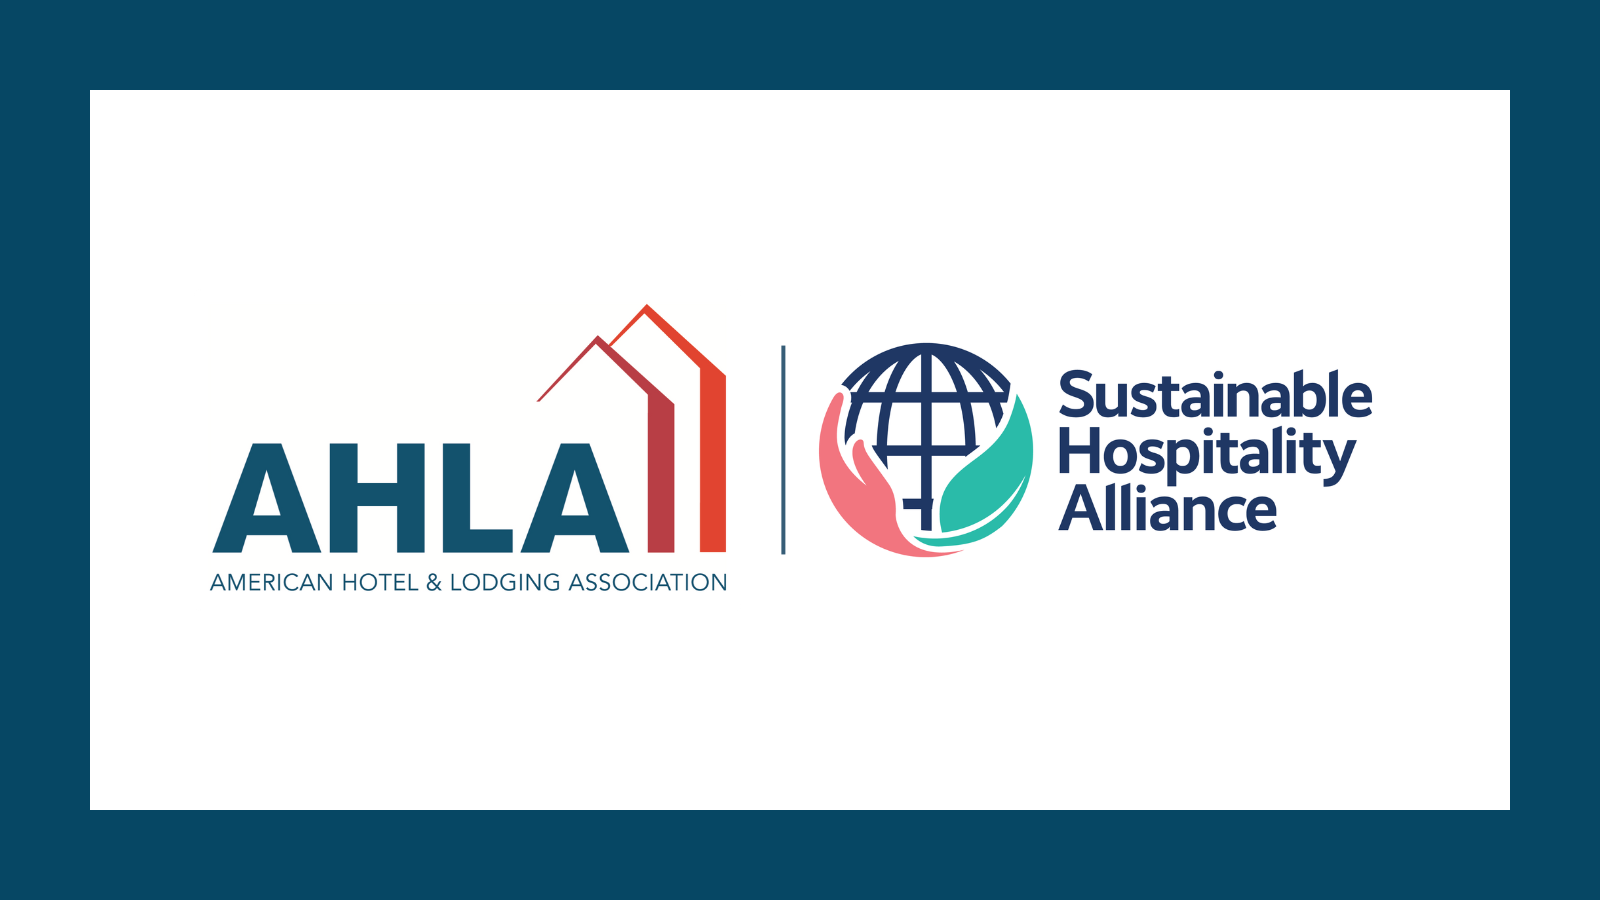 Sustainable Hospitality Alliance